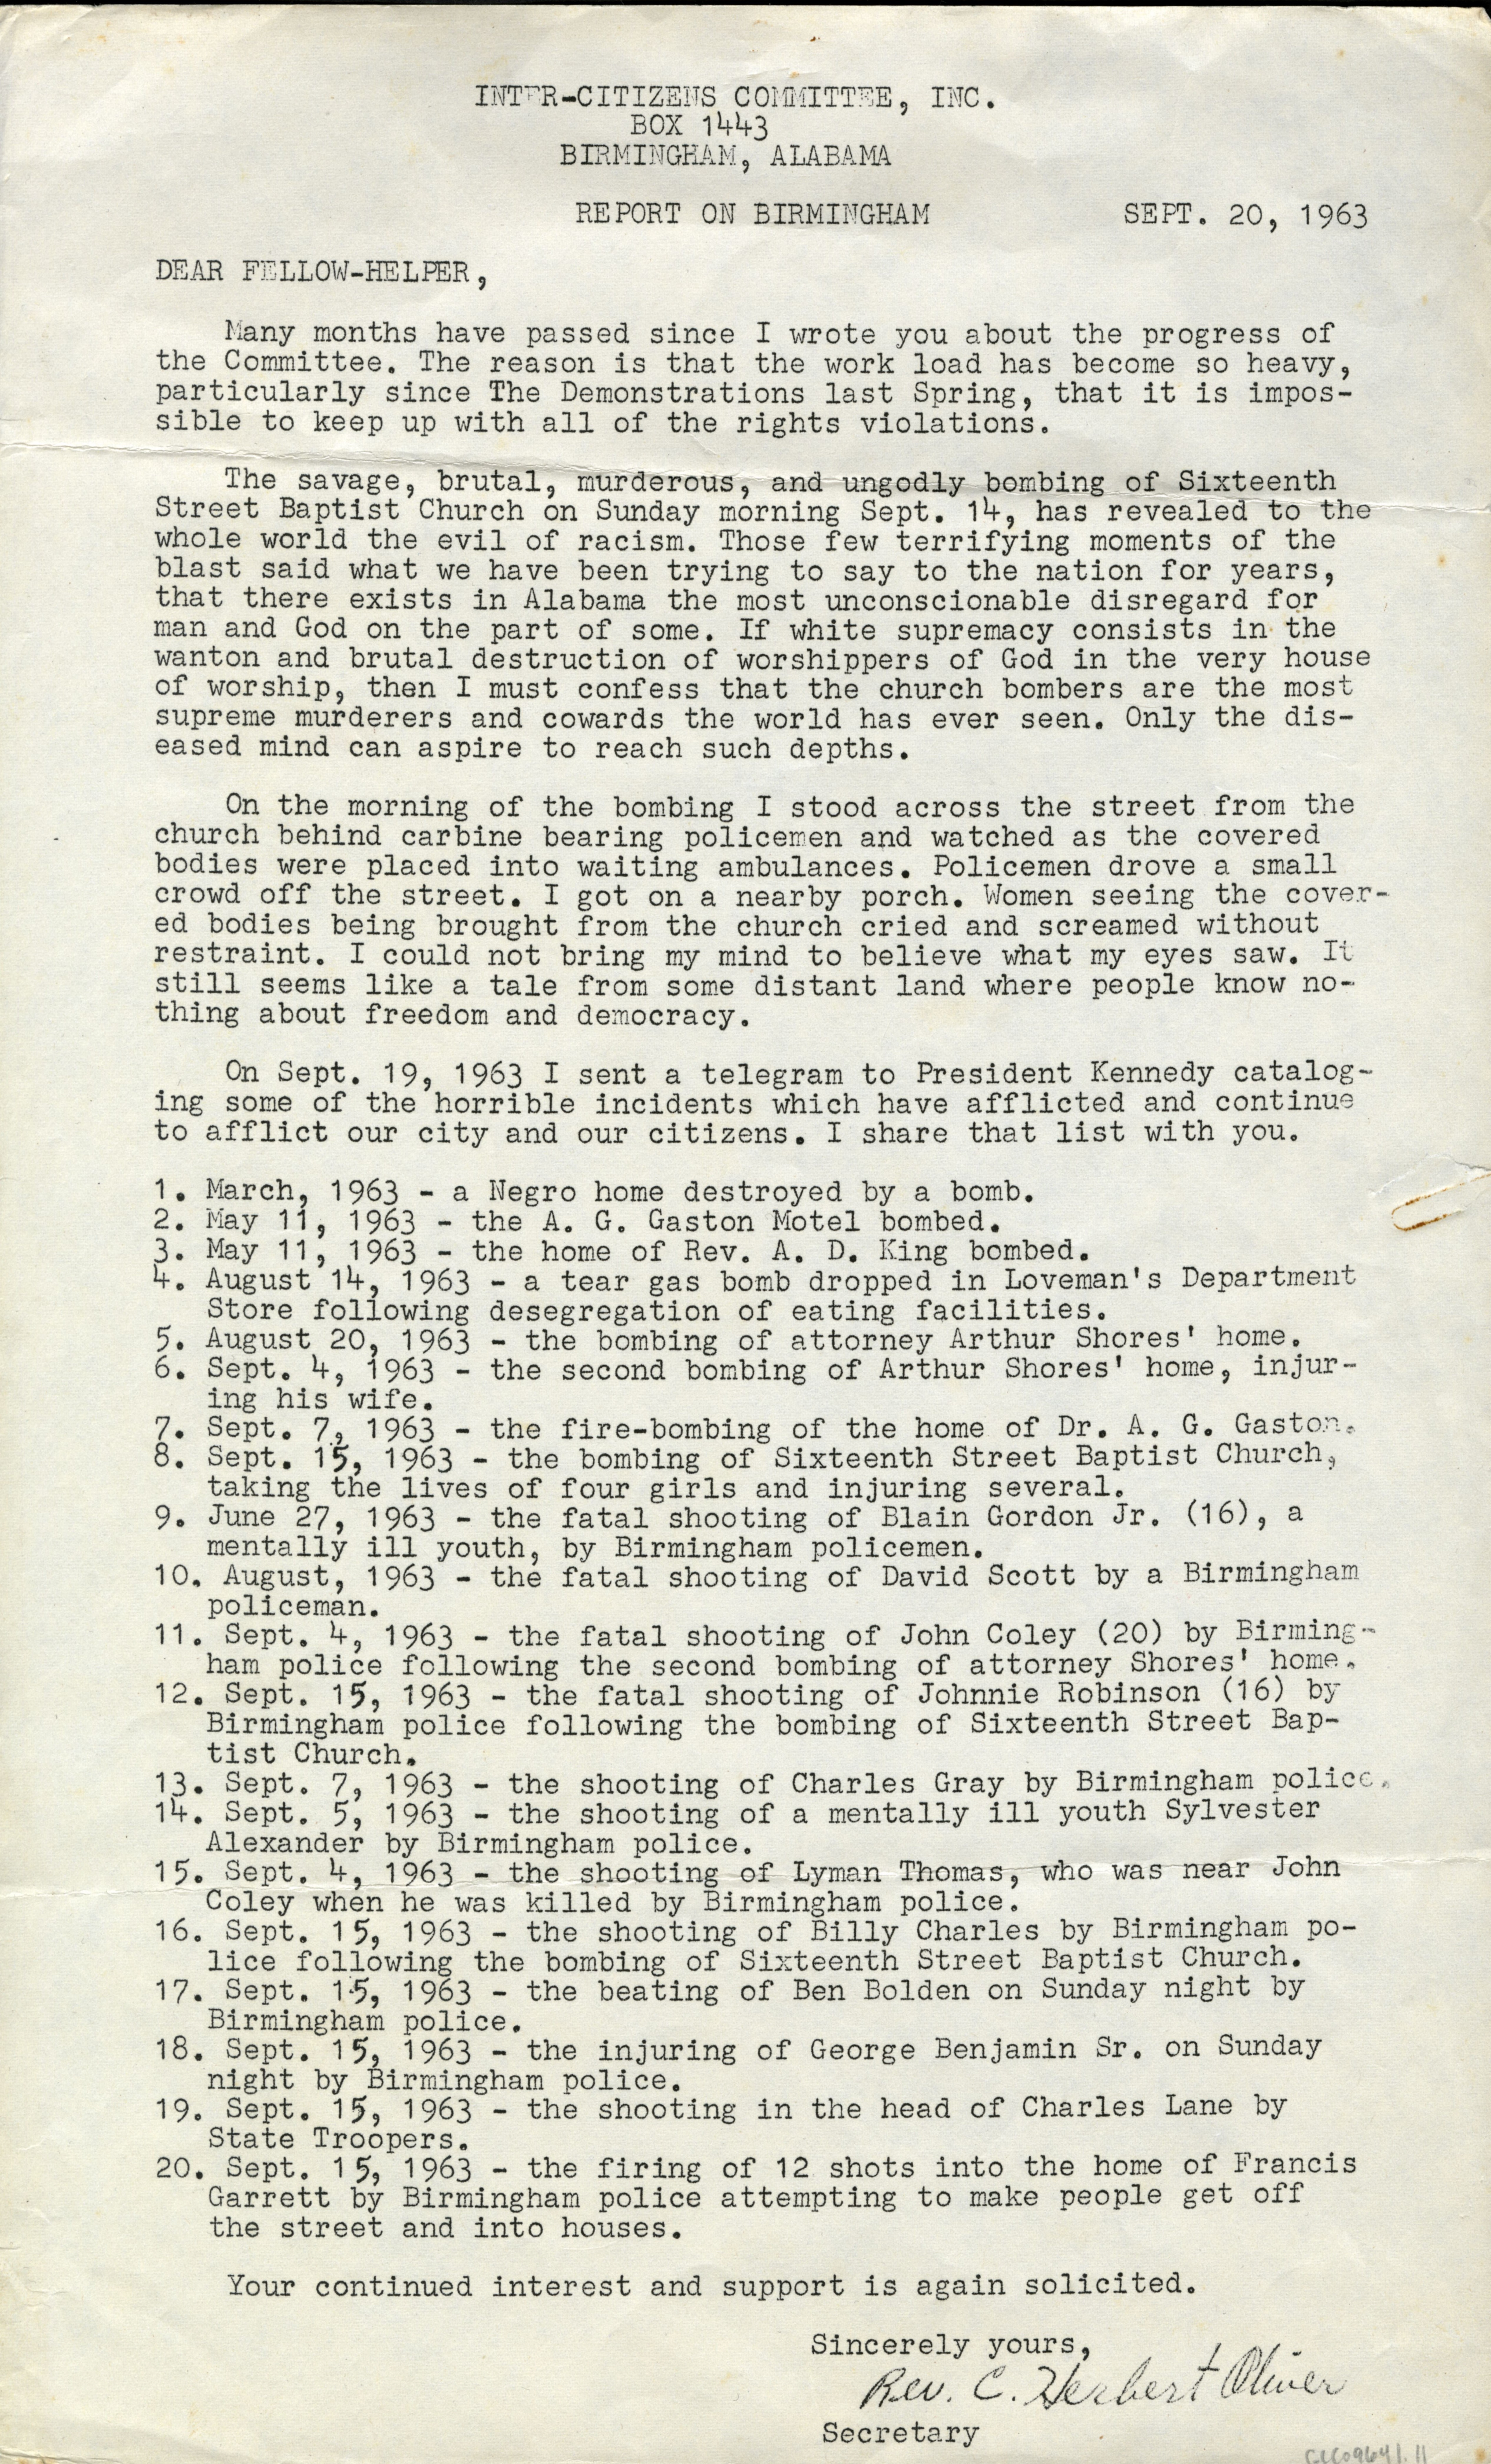 C. Herbert Oliver, “Report on Birmingham,” September 20, 1963 (The Gilder Lehrman Institute, GLC09641.11)